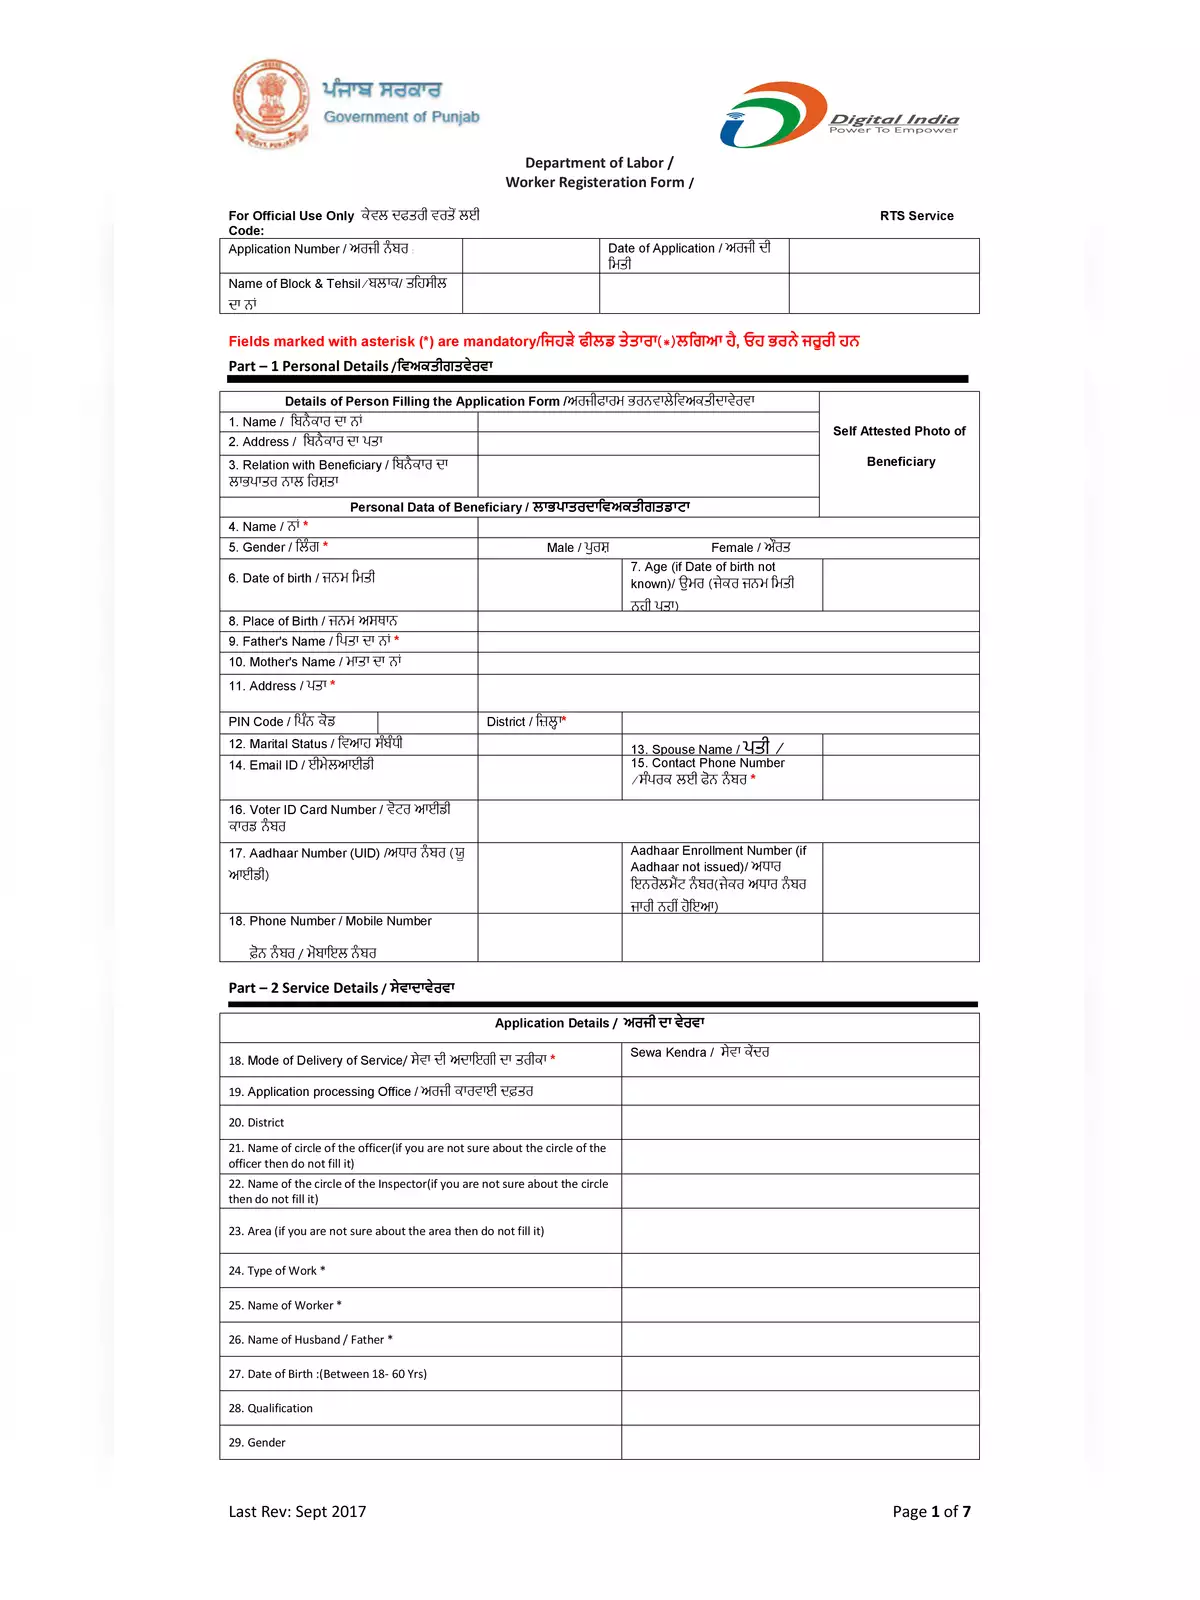 Punjab Worker Registration Form